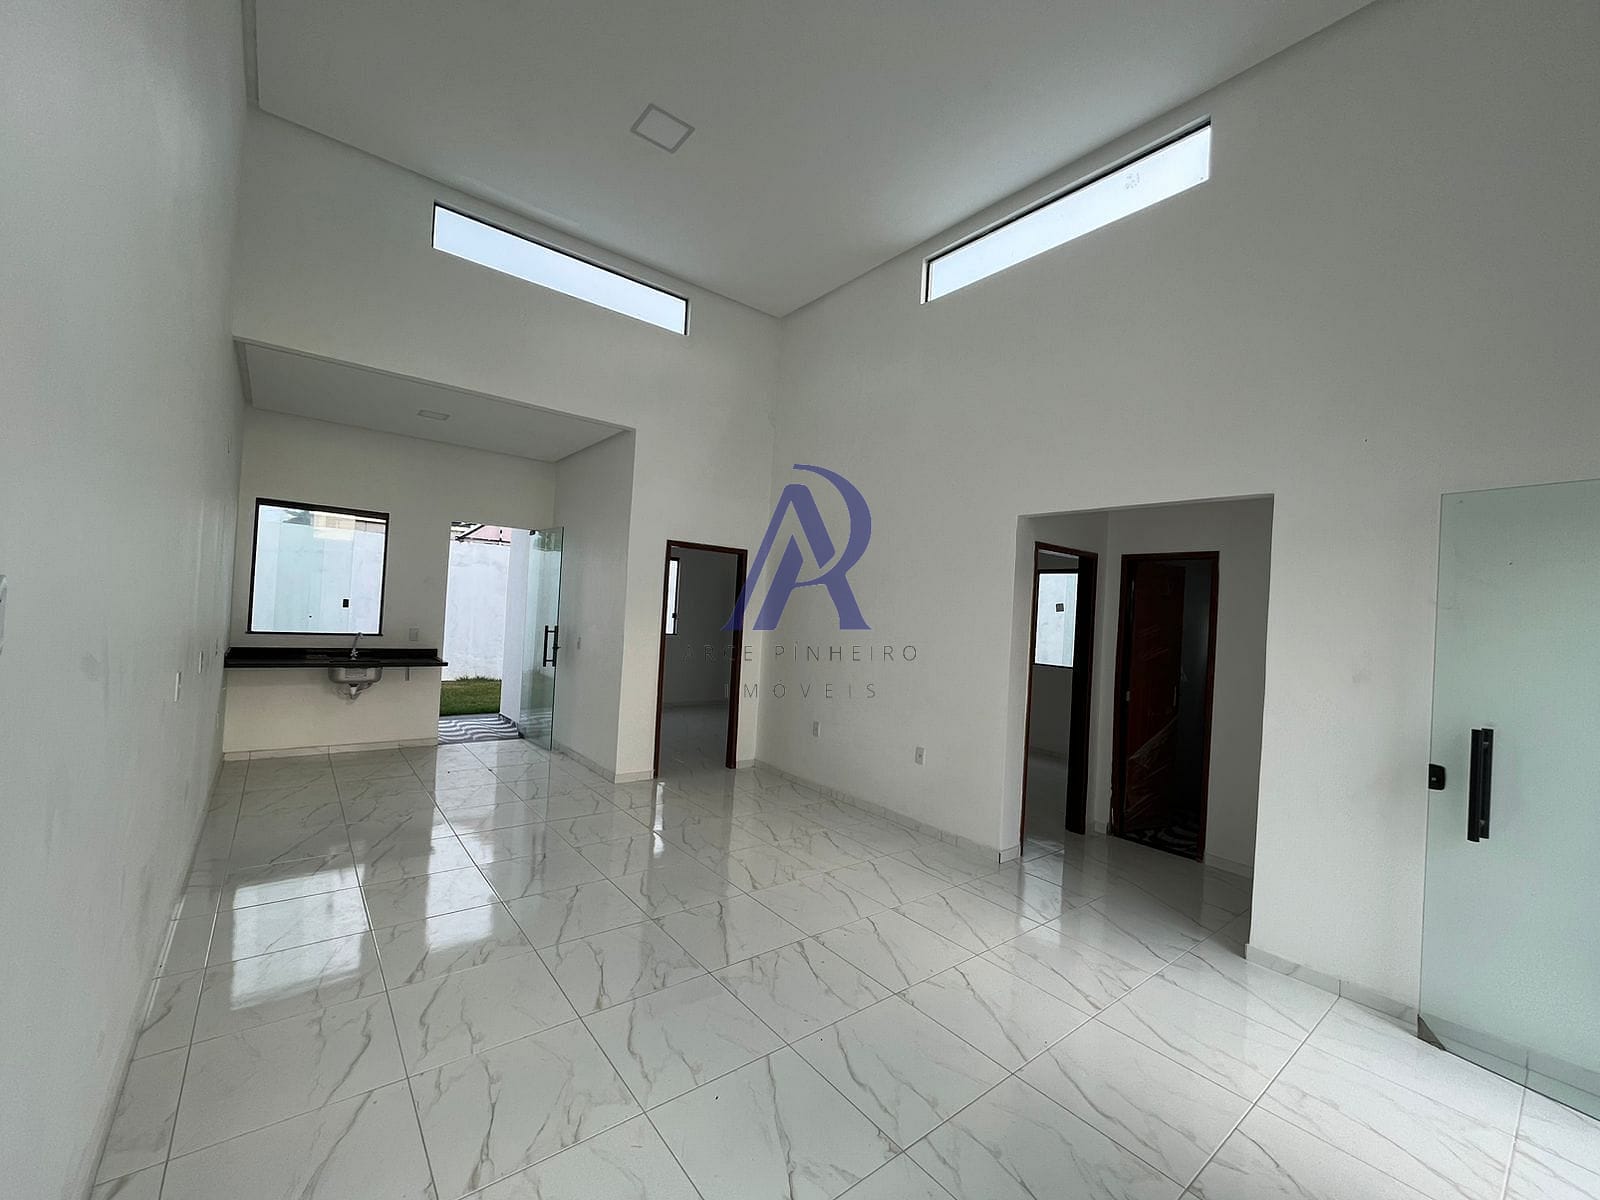 Casa em Novo Aleixo, Manaus/AM de 90m² 3 quartos à venda por R$ 419.000,00